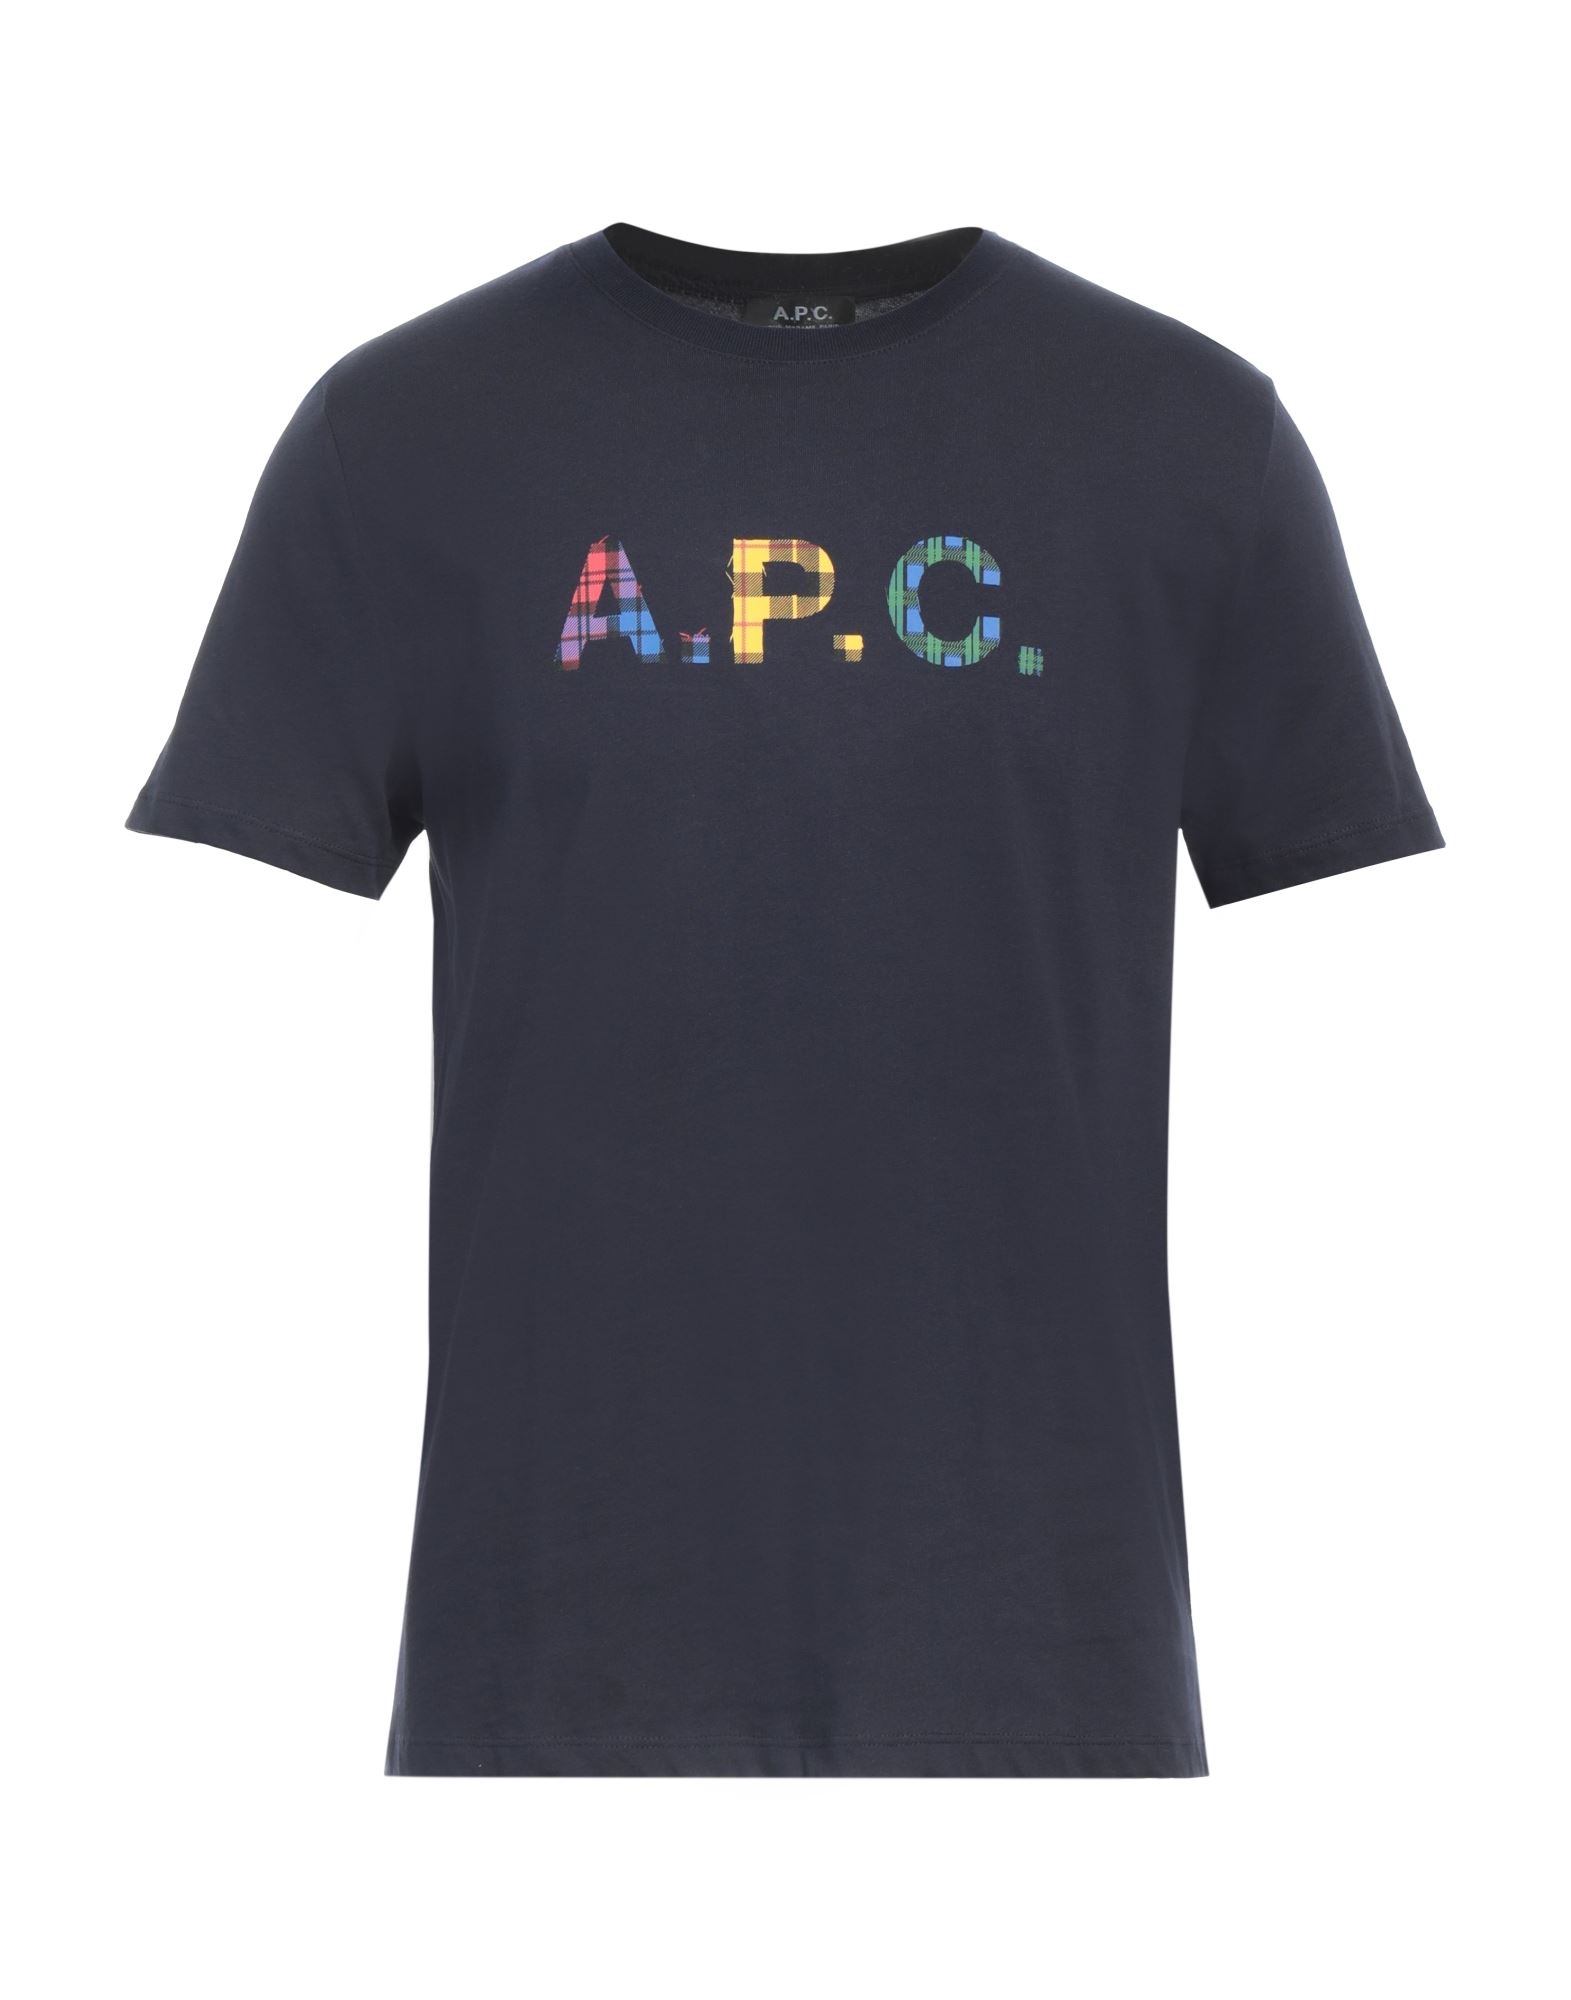 A.P.C. T-shirts Herren Nachtblau von A.P.C.